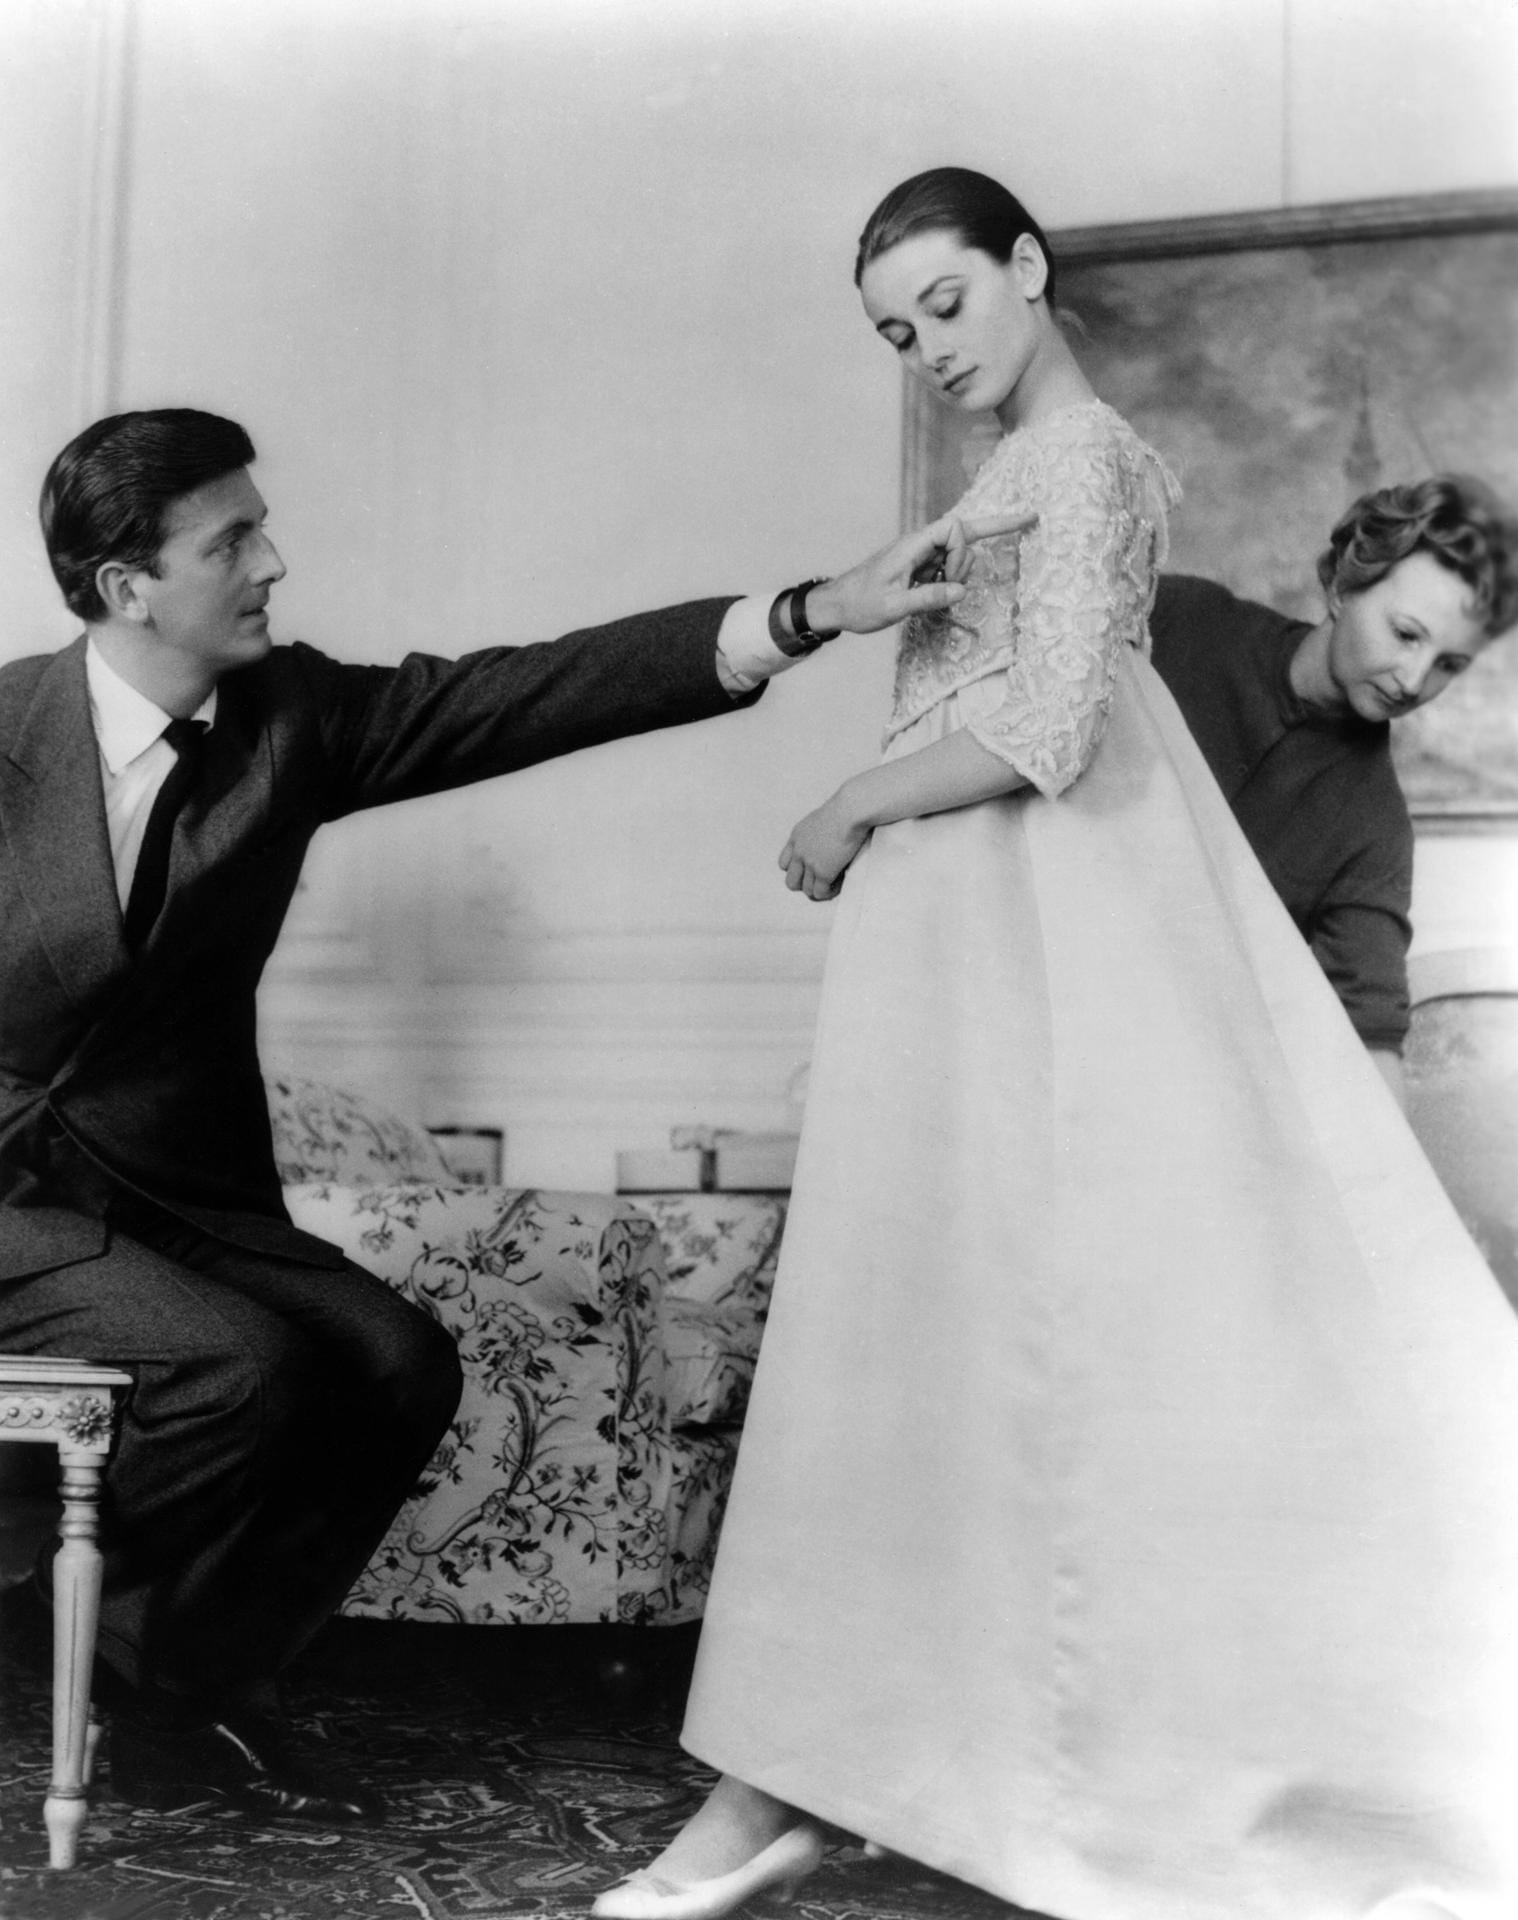 Hubert de Givenchy kleidete viele Stars der 50-er und 60-er Jahre ein. Aber in Erinnerung bleibt vor allem seine langjährige Zusammenarbeit und Freundschaft mit der Hollywood-Ikone Audrey Hepburn.